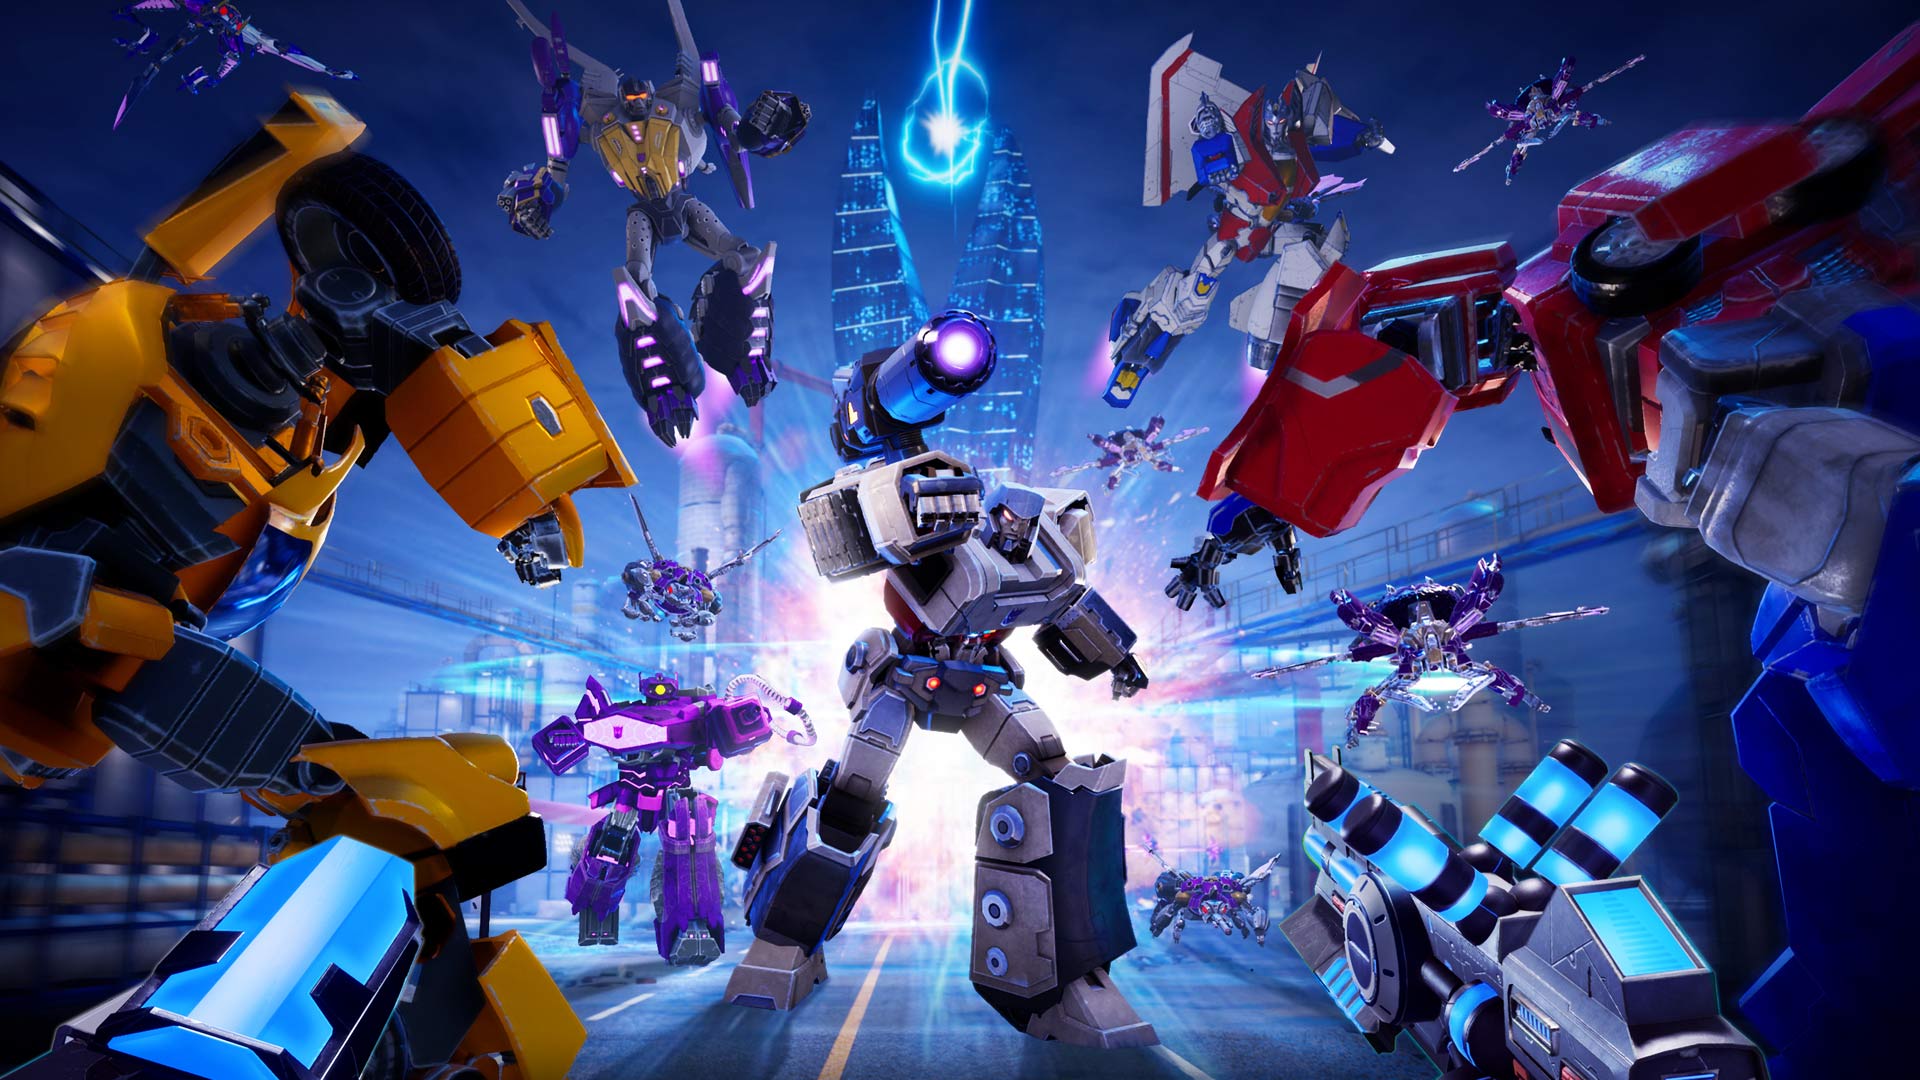 Game Transformers - Bạn là fan của Transformers? Hãy đến và thử sức với game Transformers mới nhất! Với lối chơi độc đáo và đồ họa tuyệt đẹp, bạn sẽ không muốn bỏ lỡ trải nghiệm này.